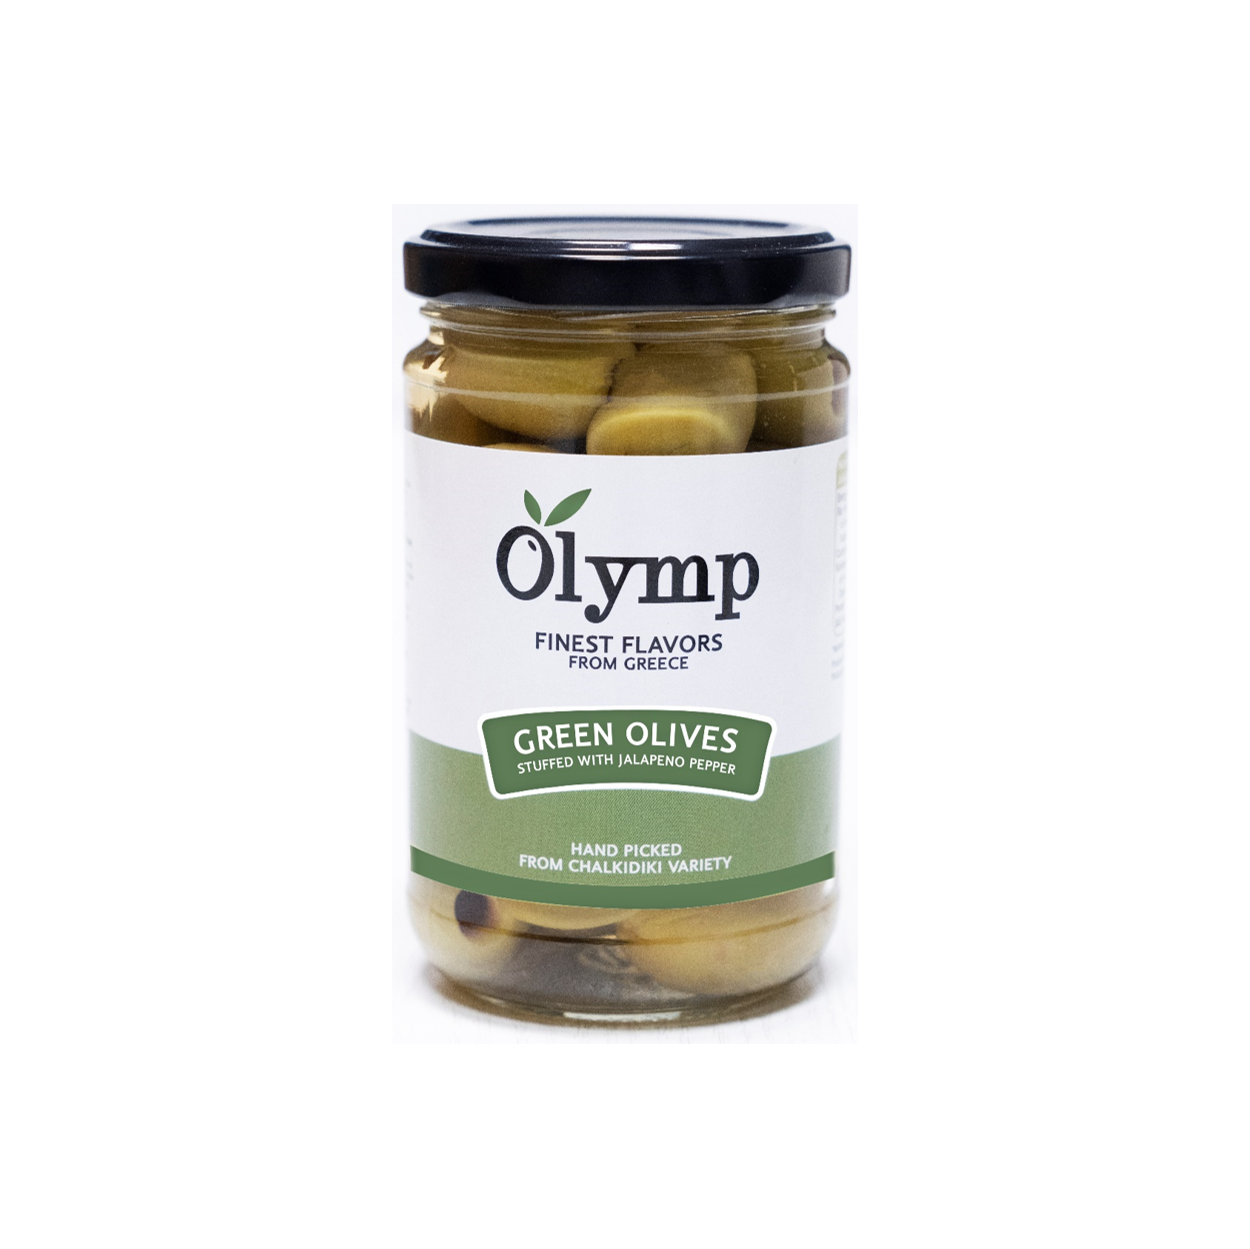 Olymp zelené olivy s jalapeno